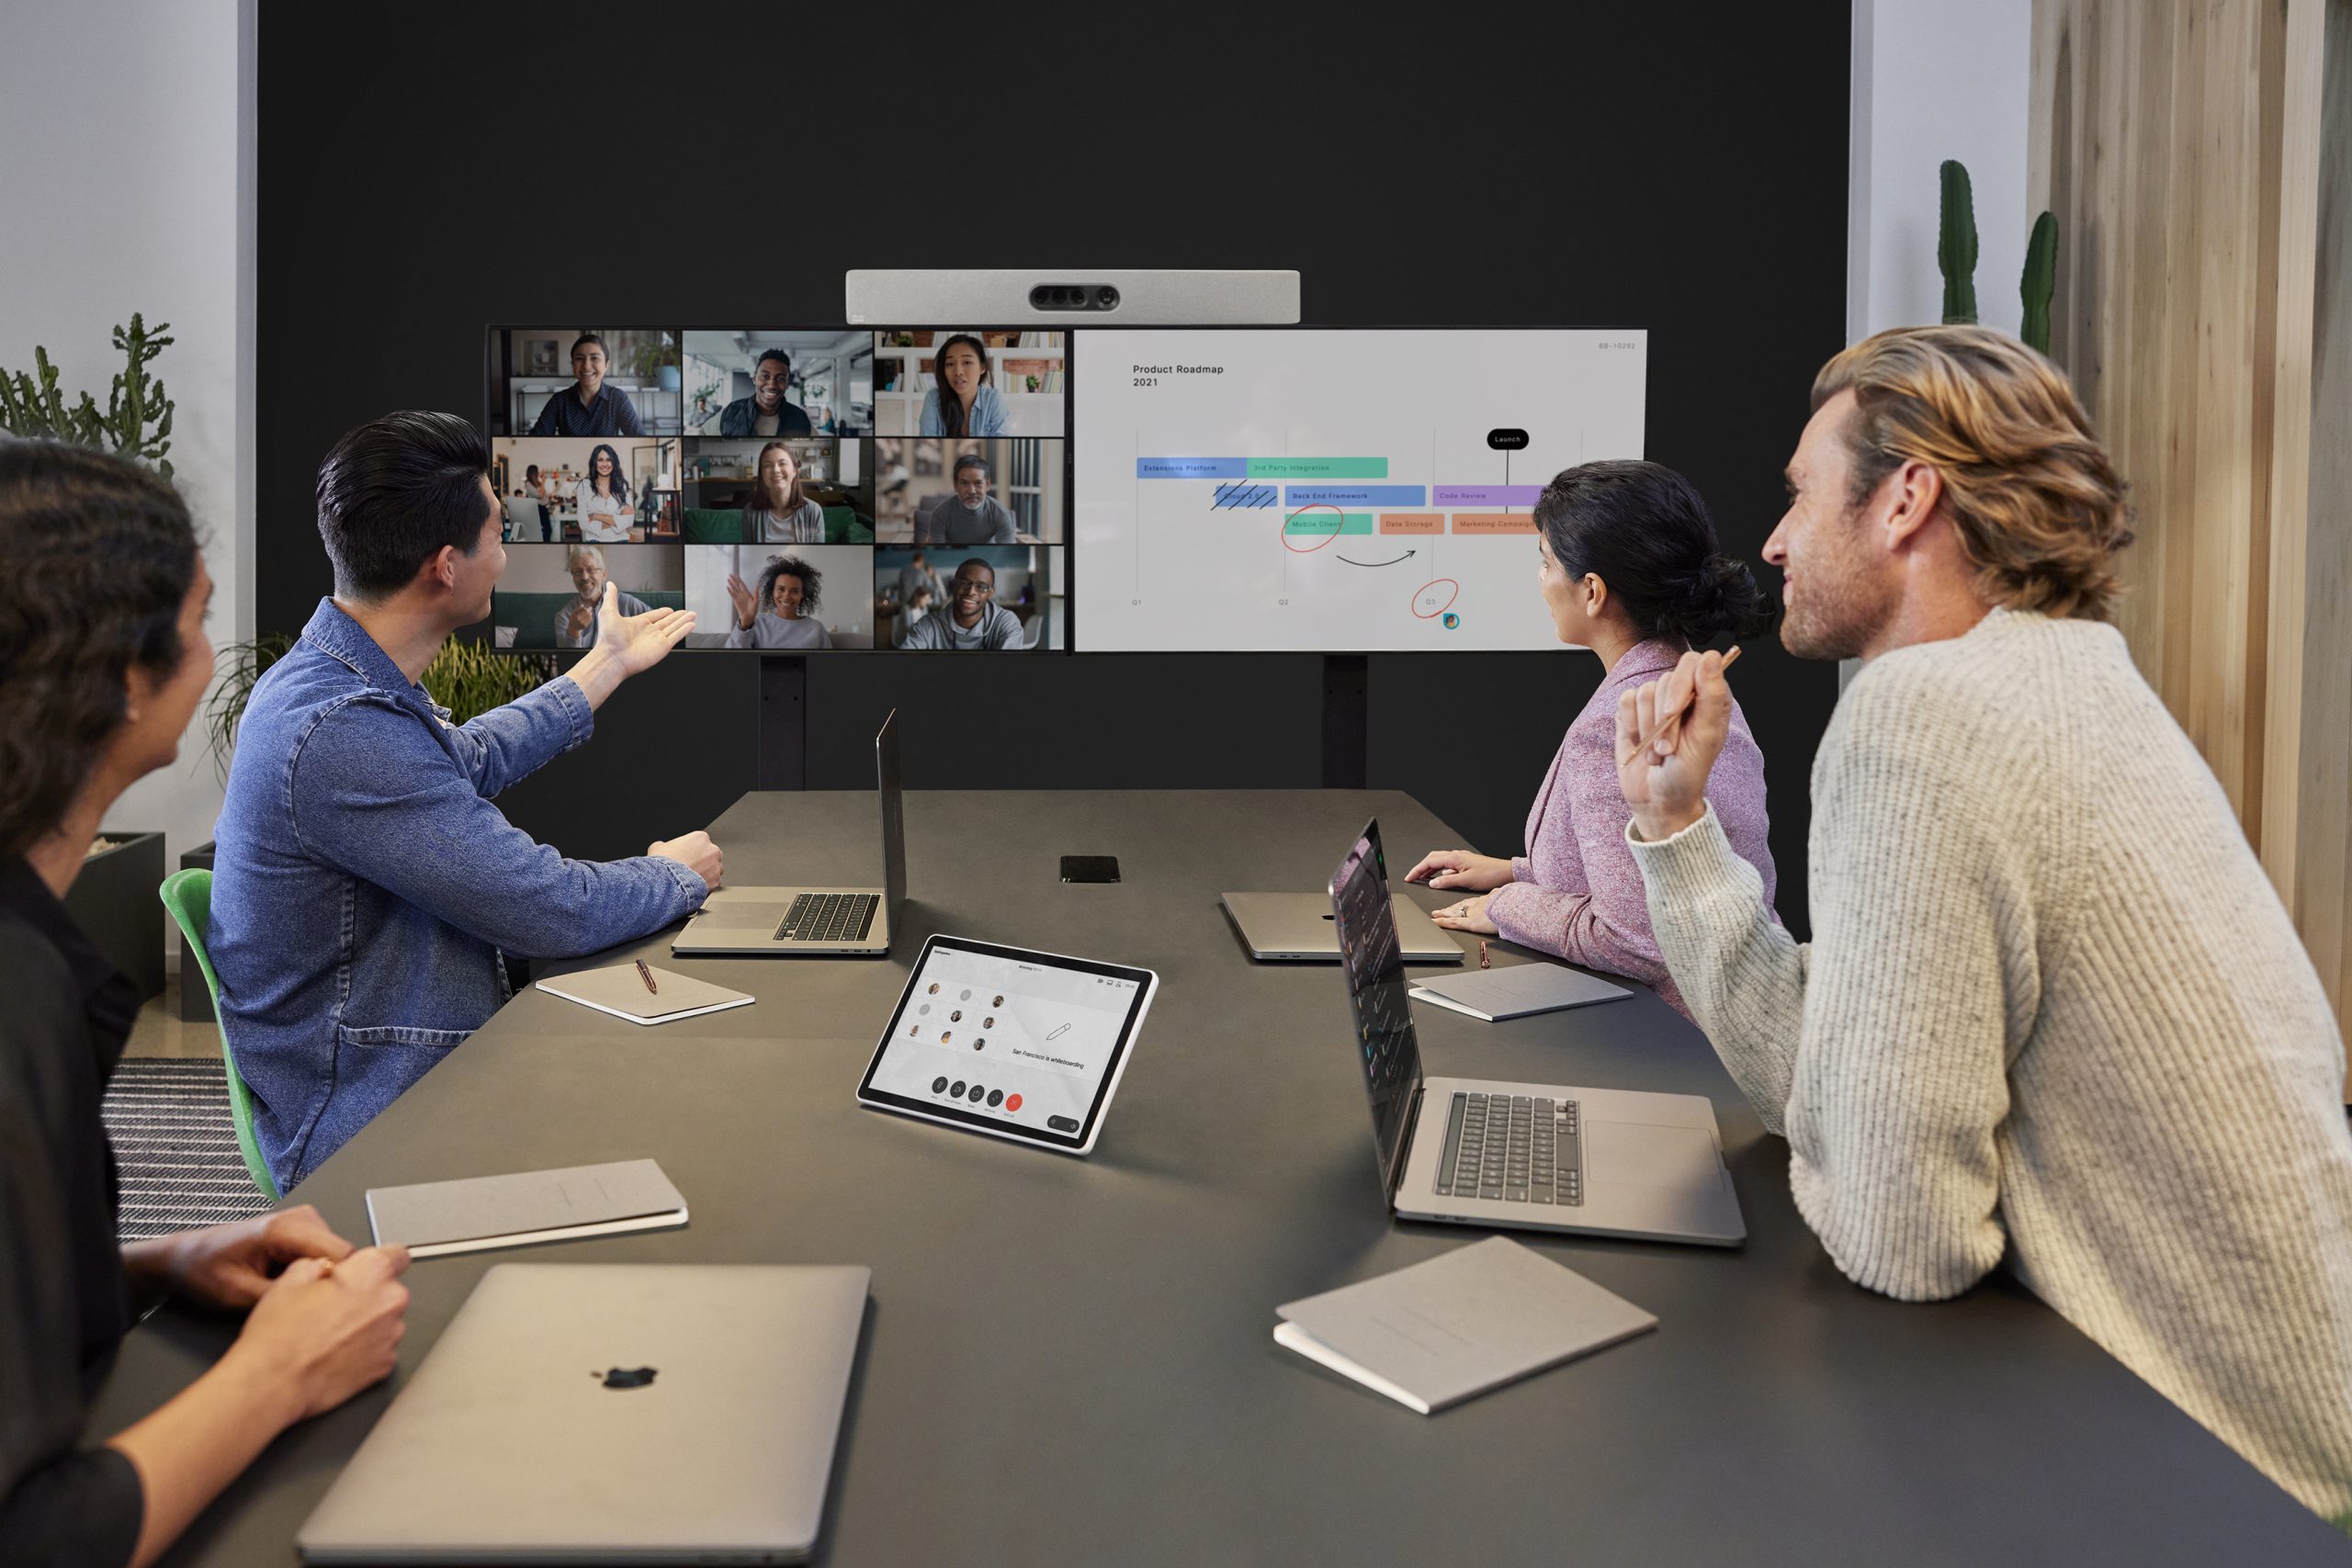 图片展示了几位专业人士在办公室进行视频会议，讨论显示在屏幕上的图表和数据。